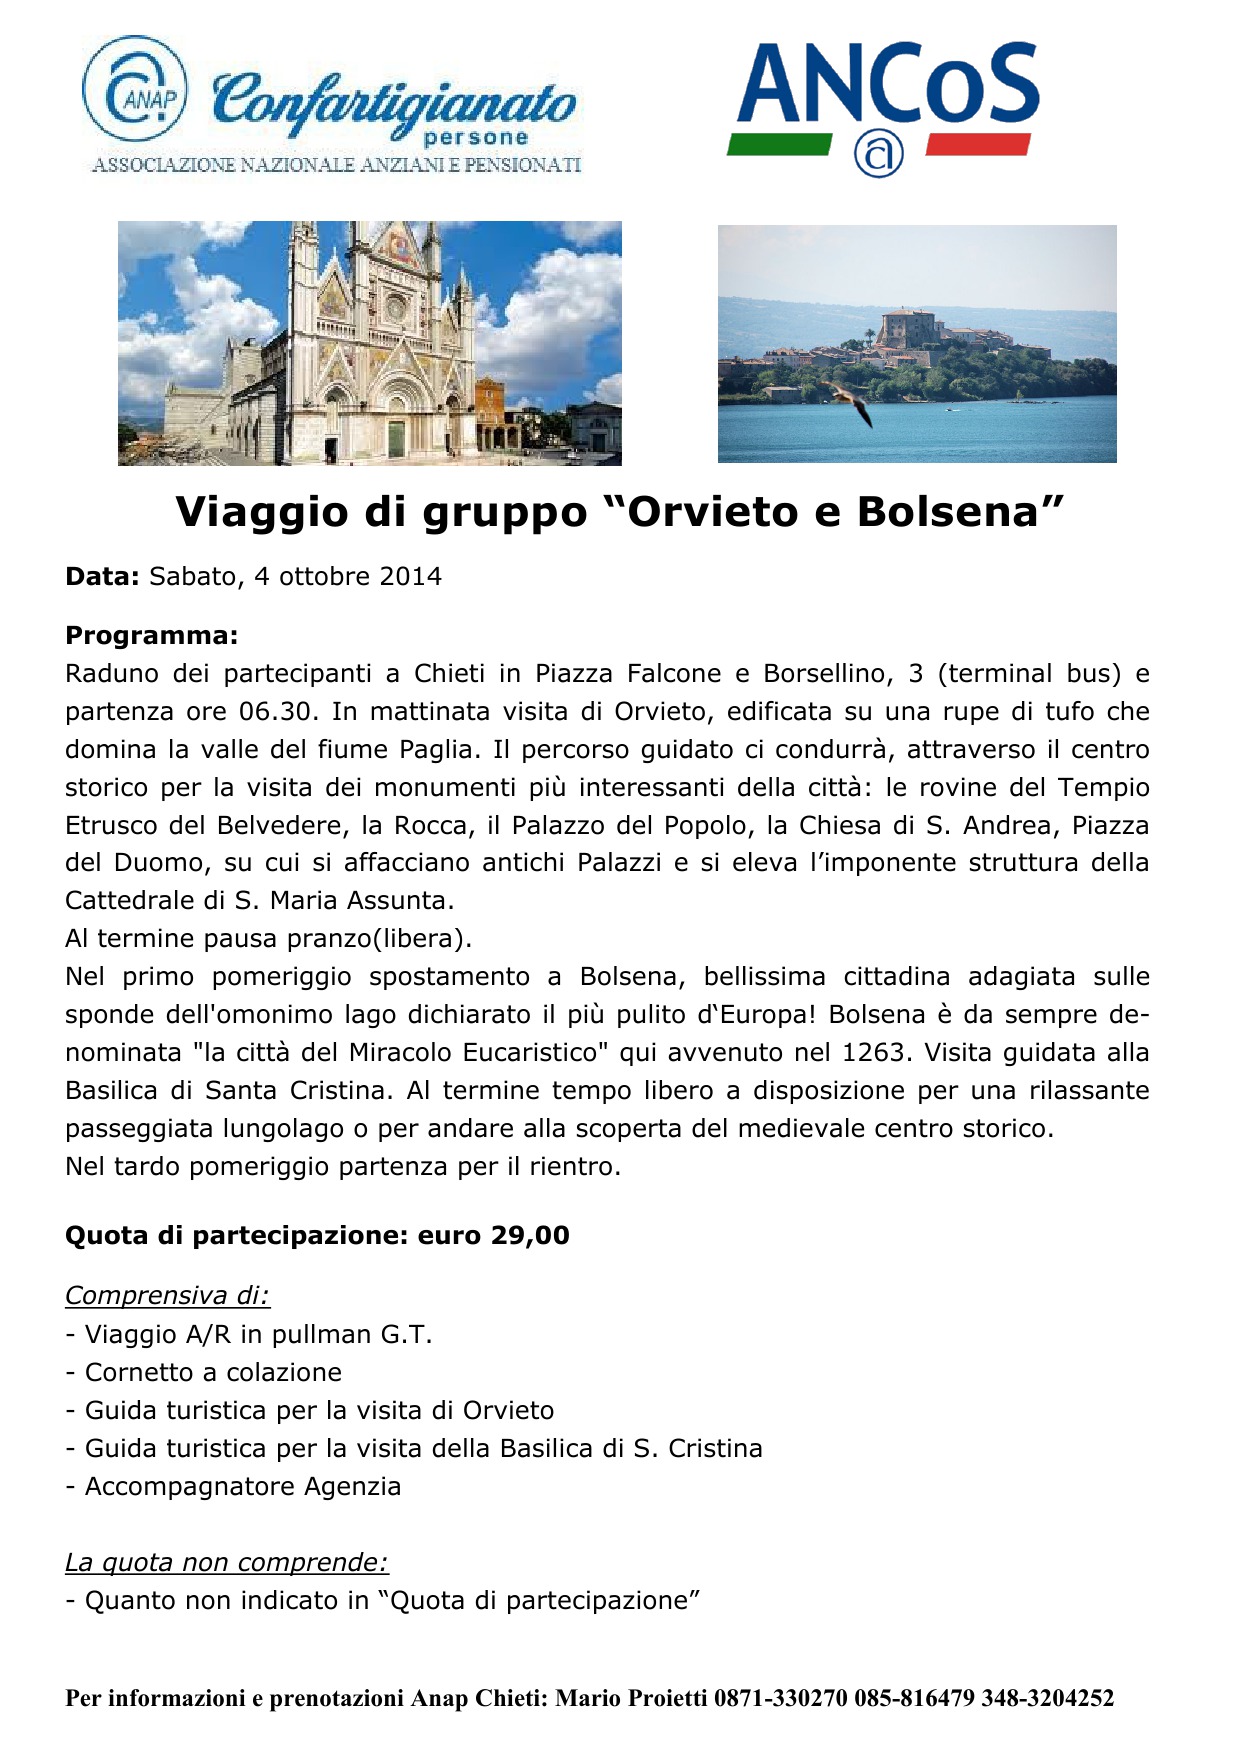 Viaggio di gruppo “Orvieto e Bolsena”